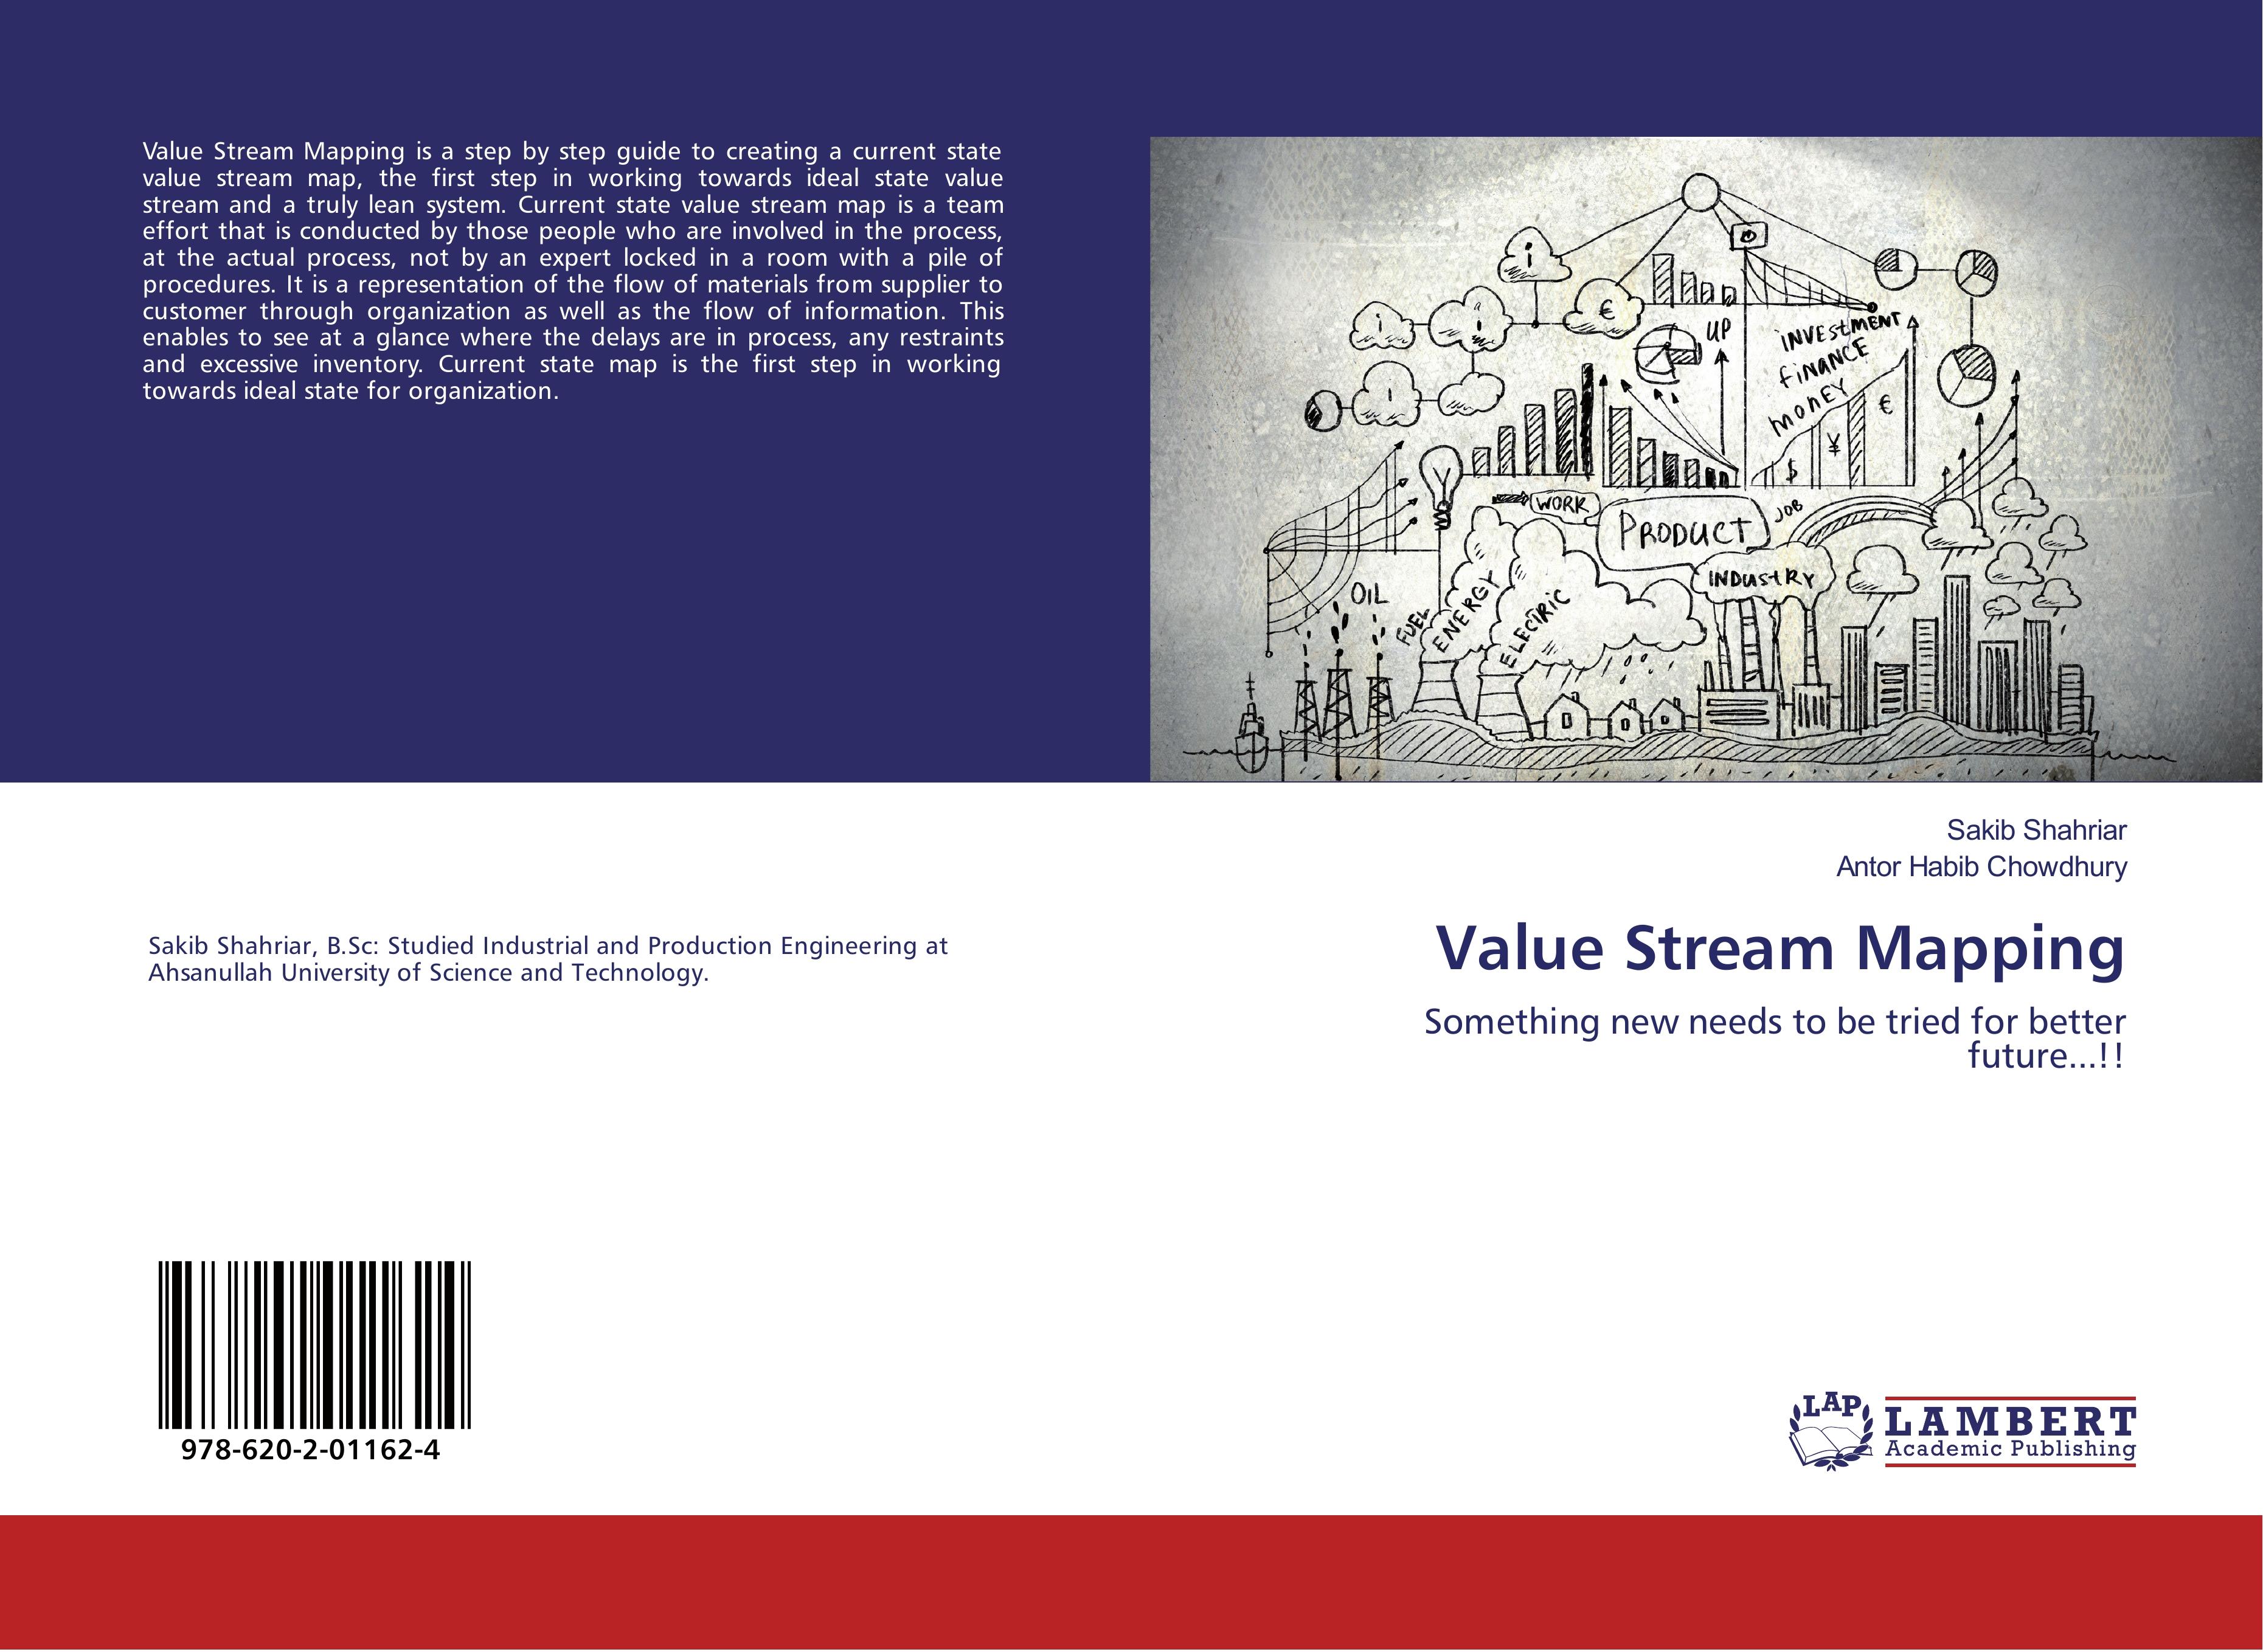 Value Stream Mapping - Shahriar, Sakib|Habib Chowdhury, Antor